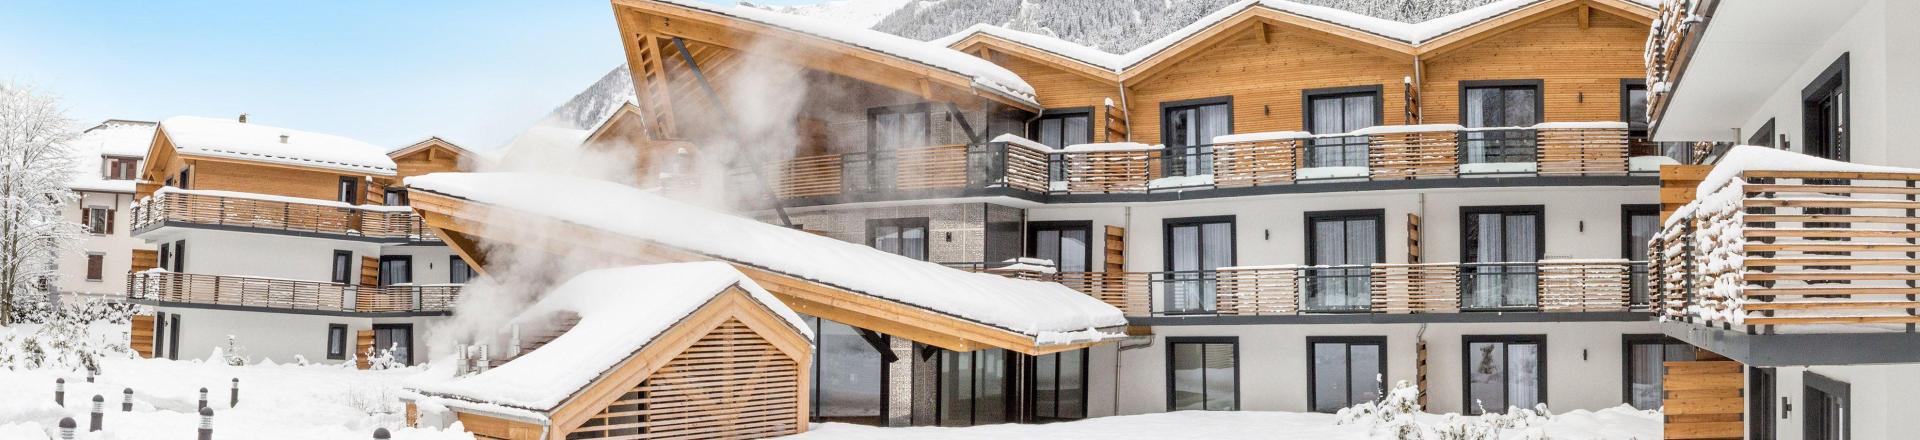 Location au ski Résidence Prestige Isatis - Chamonix - Extérieur hiver